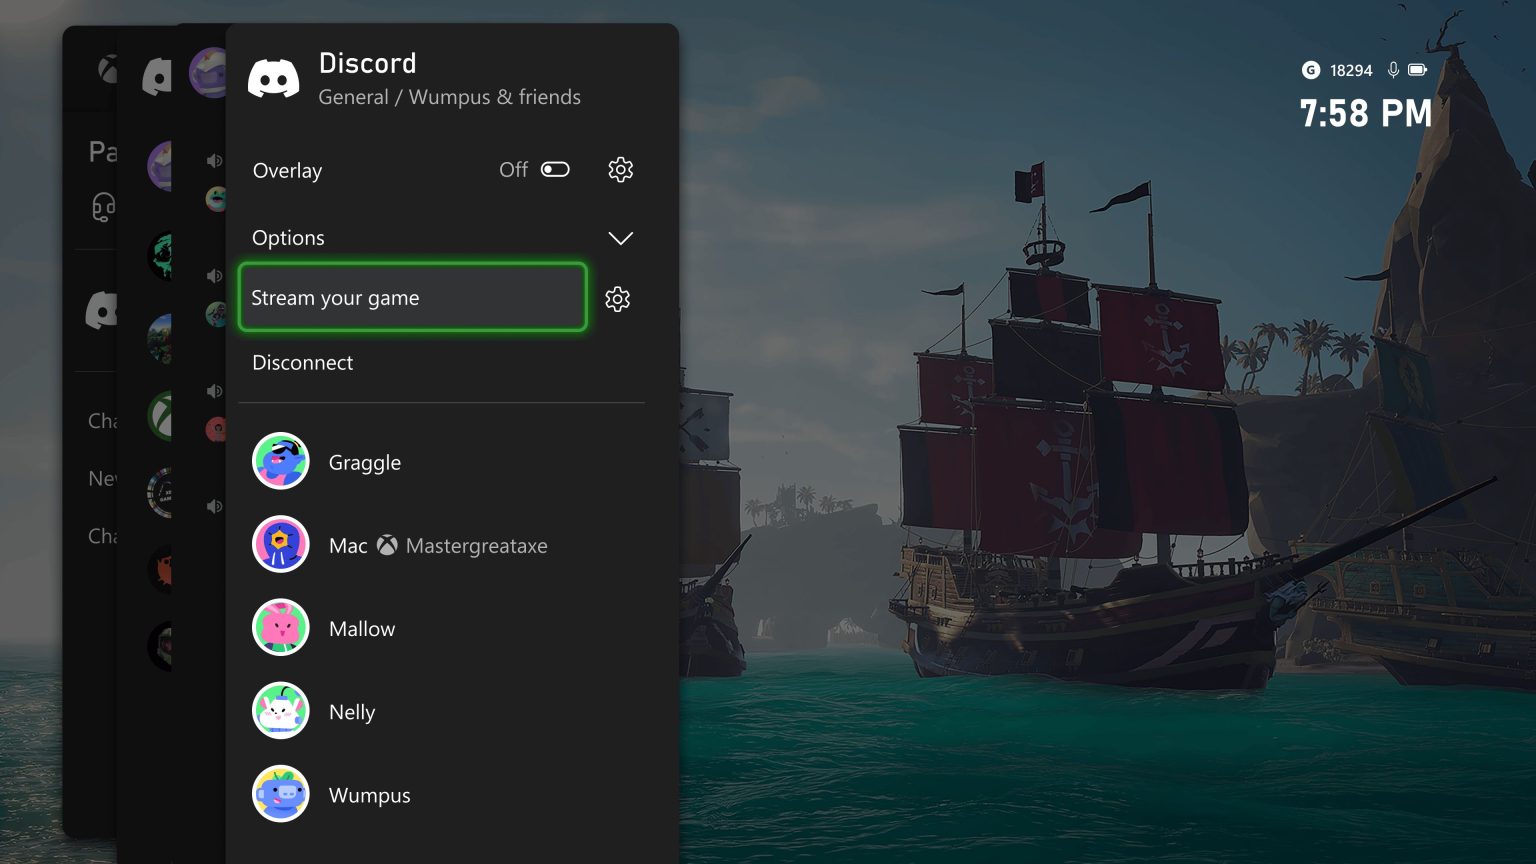 Microsoft har annonceret, at Xbox-brugere nu kan streame deres gameplay via Discord direkte fra konsollen. Funktionen er nu tilgængelig for Xbox Insider-medlemmer.